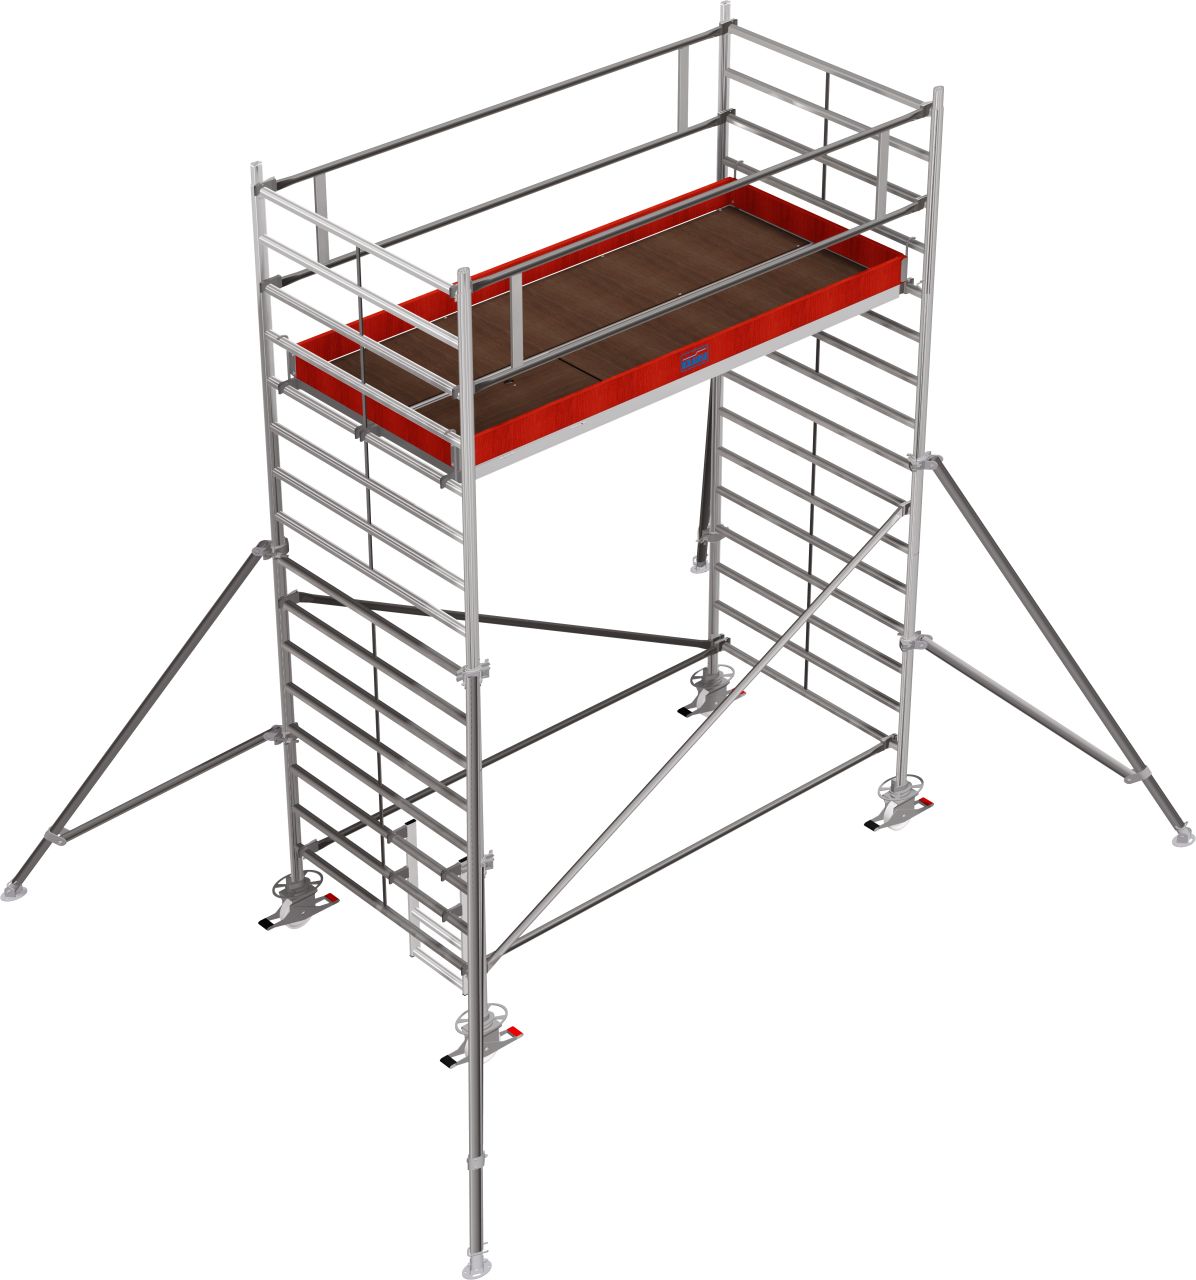 Дополнительное изображение Stabilo 5000 рабочая высота 5,2 высота 4.3 м, размер площадки (3x1.5 м)